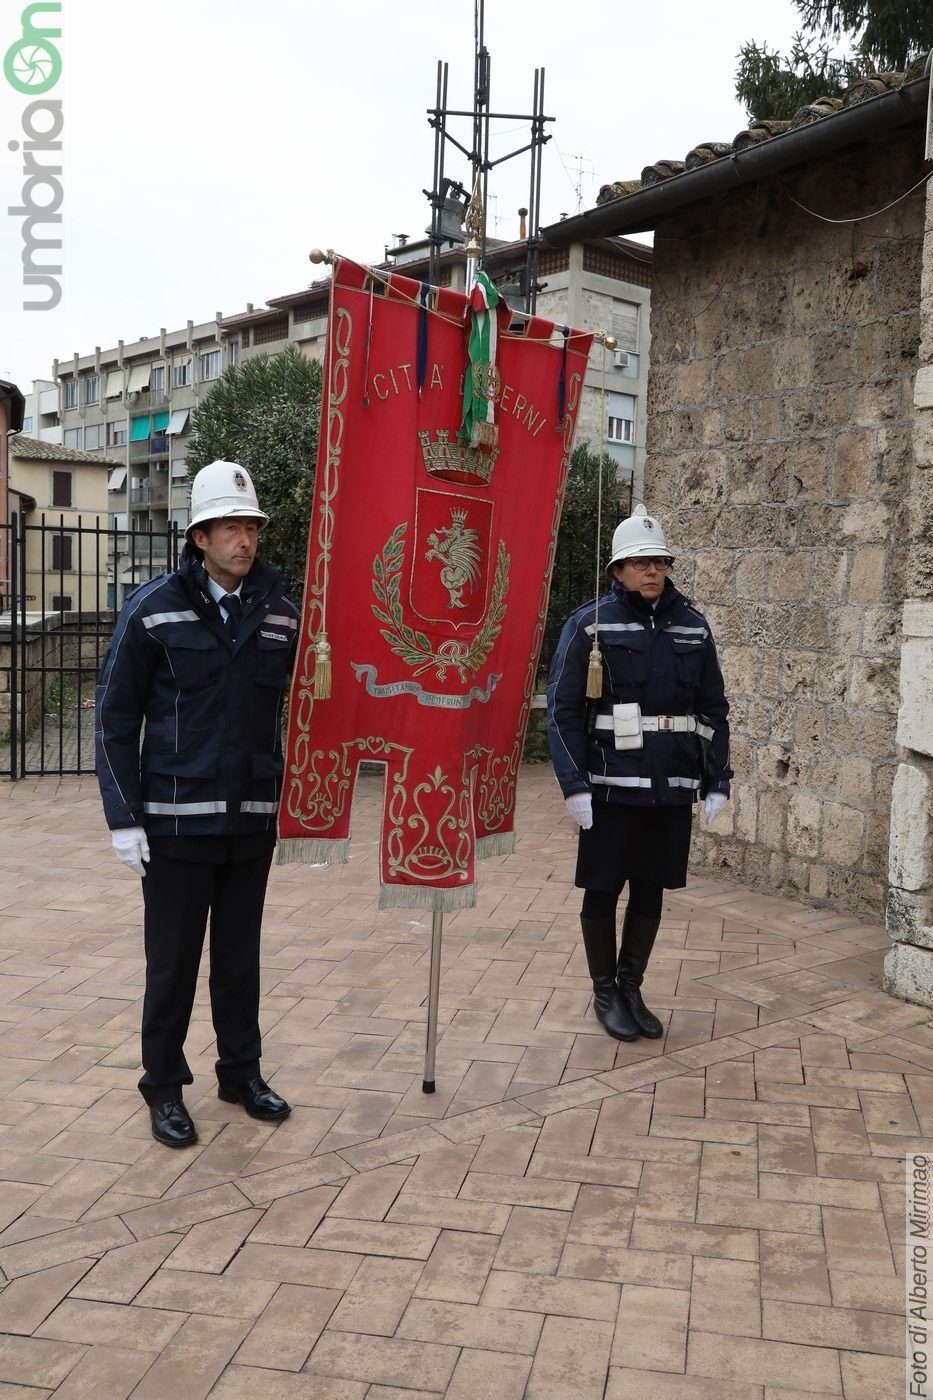 San-Sebastiano-Polizia-Locale-Terni-cerimonia-20-gennaio-2020-68-e1579523324115